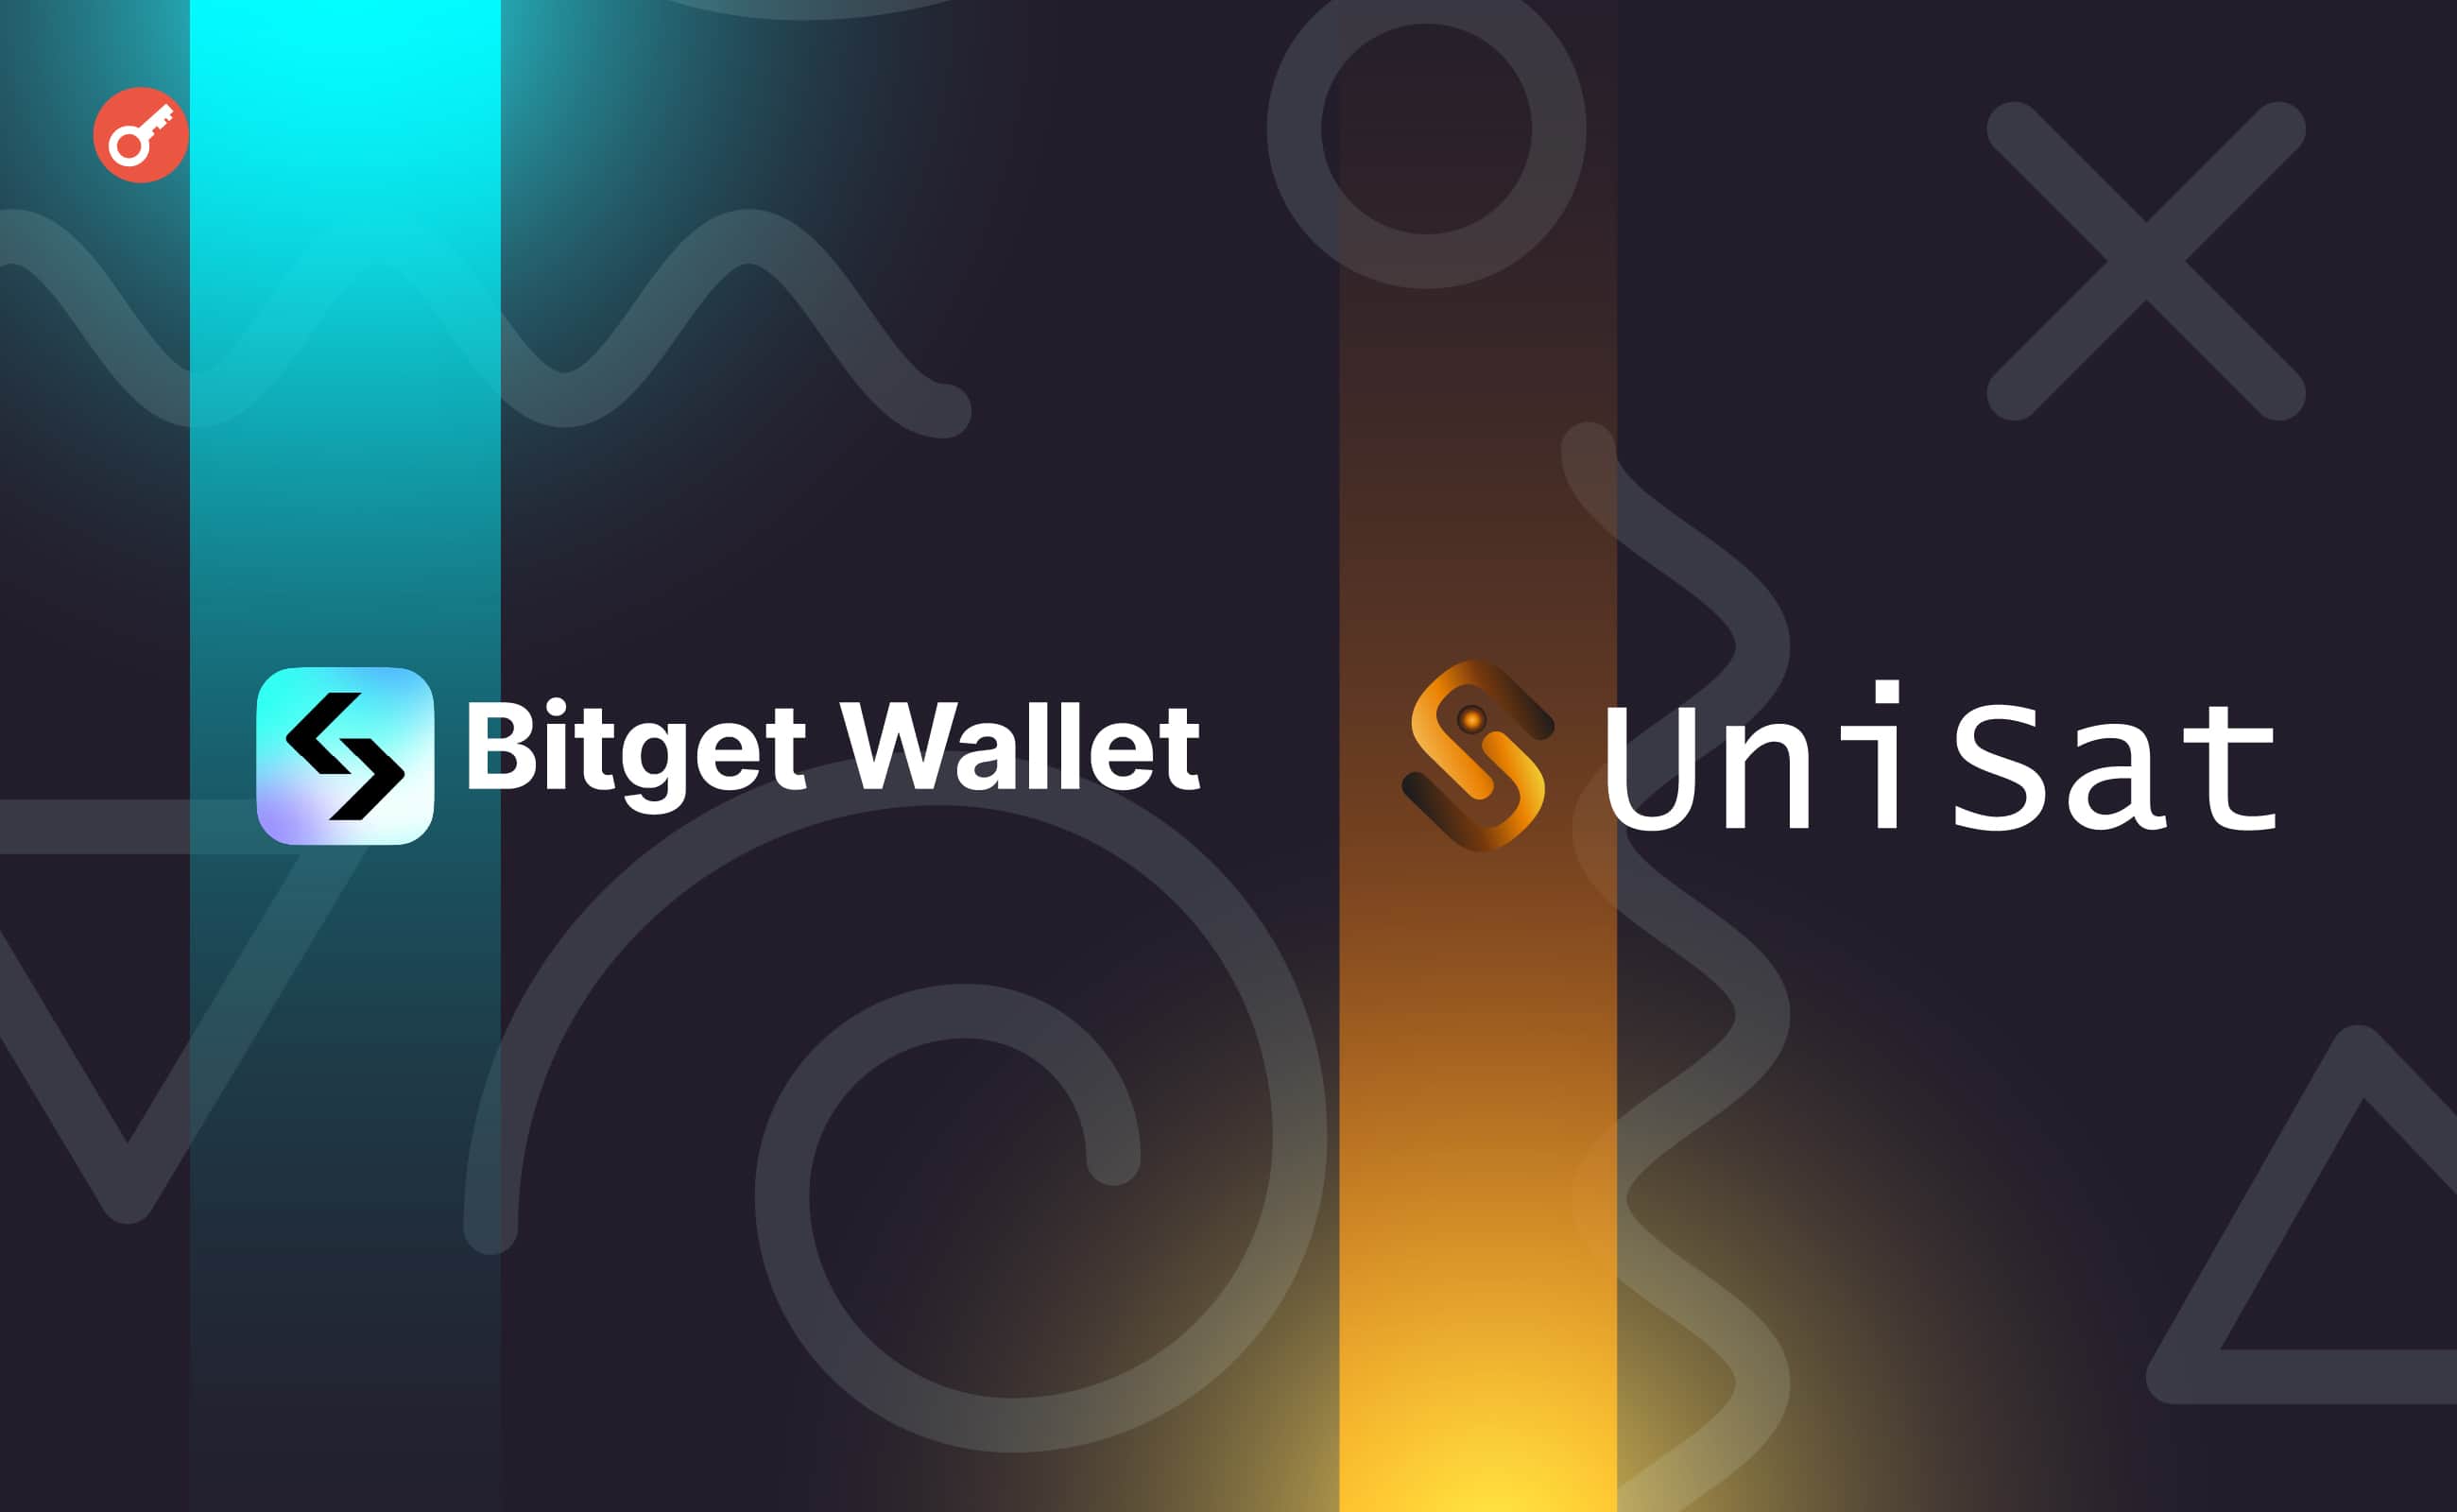 У Bitget Wallet оголосили про партнерство з UniSat і запуск платформи Task2Get. Головний колаж новини.